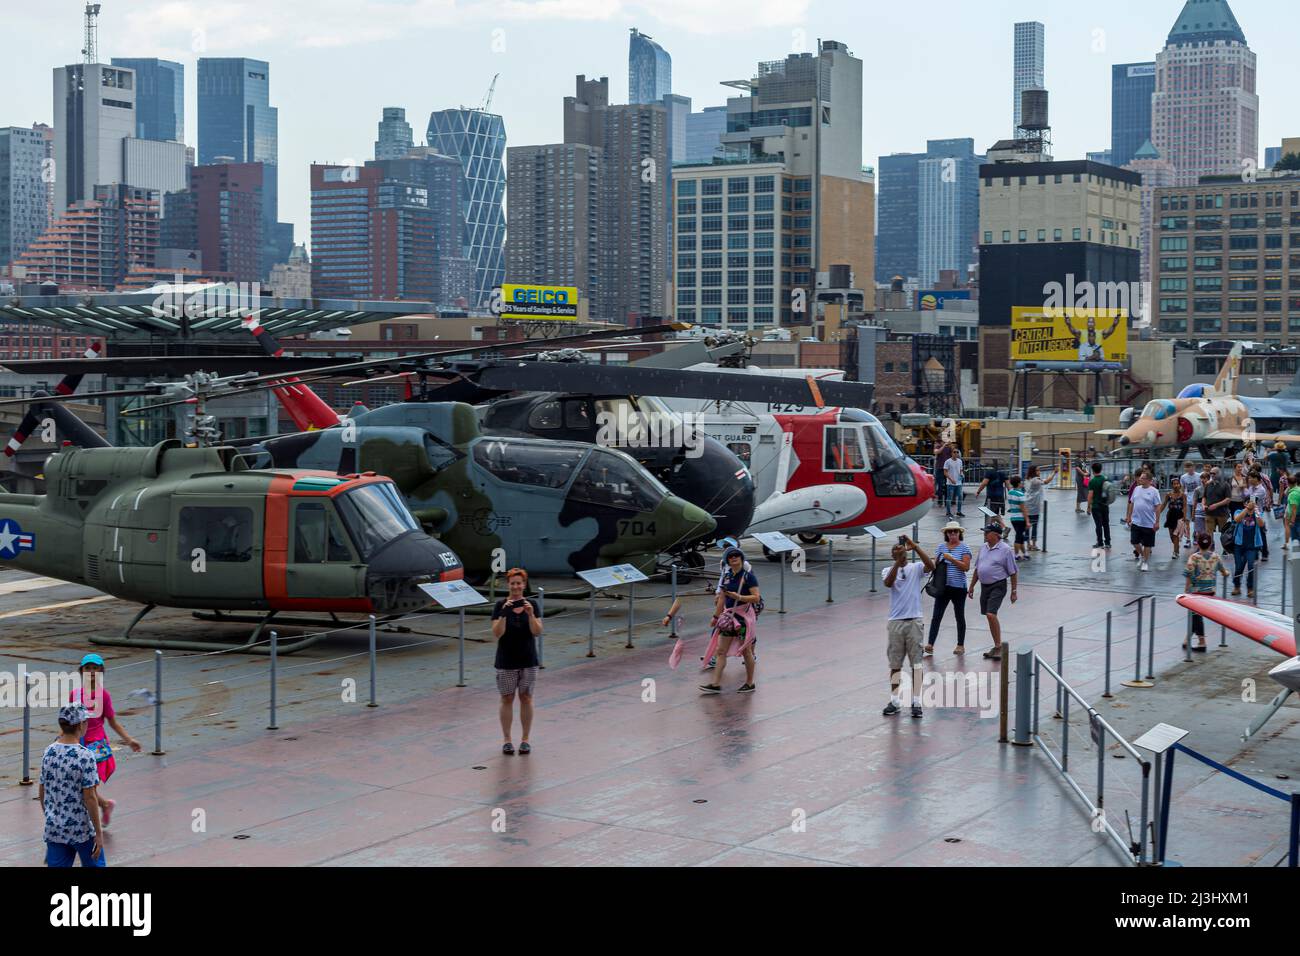 12 AV/W 46 ST, New York City, NY, USA, alcuni elicotteri all'Intrepid Sea, Air & Space Museum - un museo di storia militare e marittima americano espone la portaerei USS Intrepid. Foto Stock